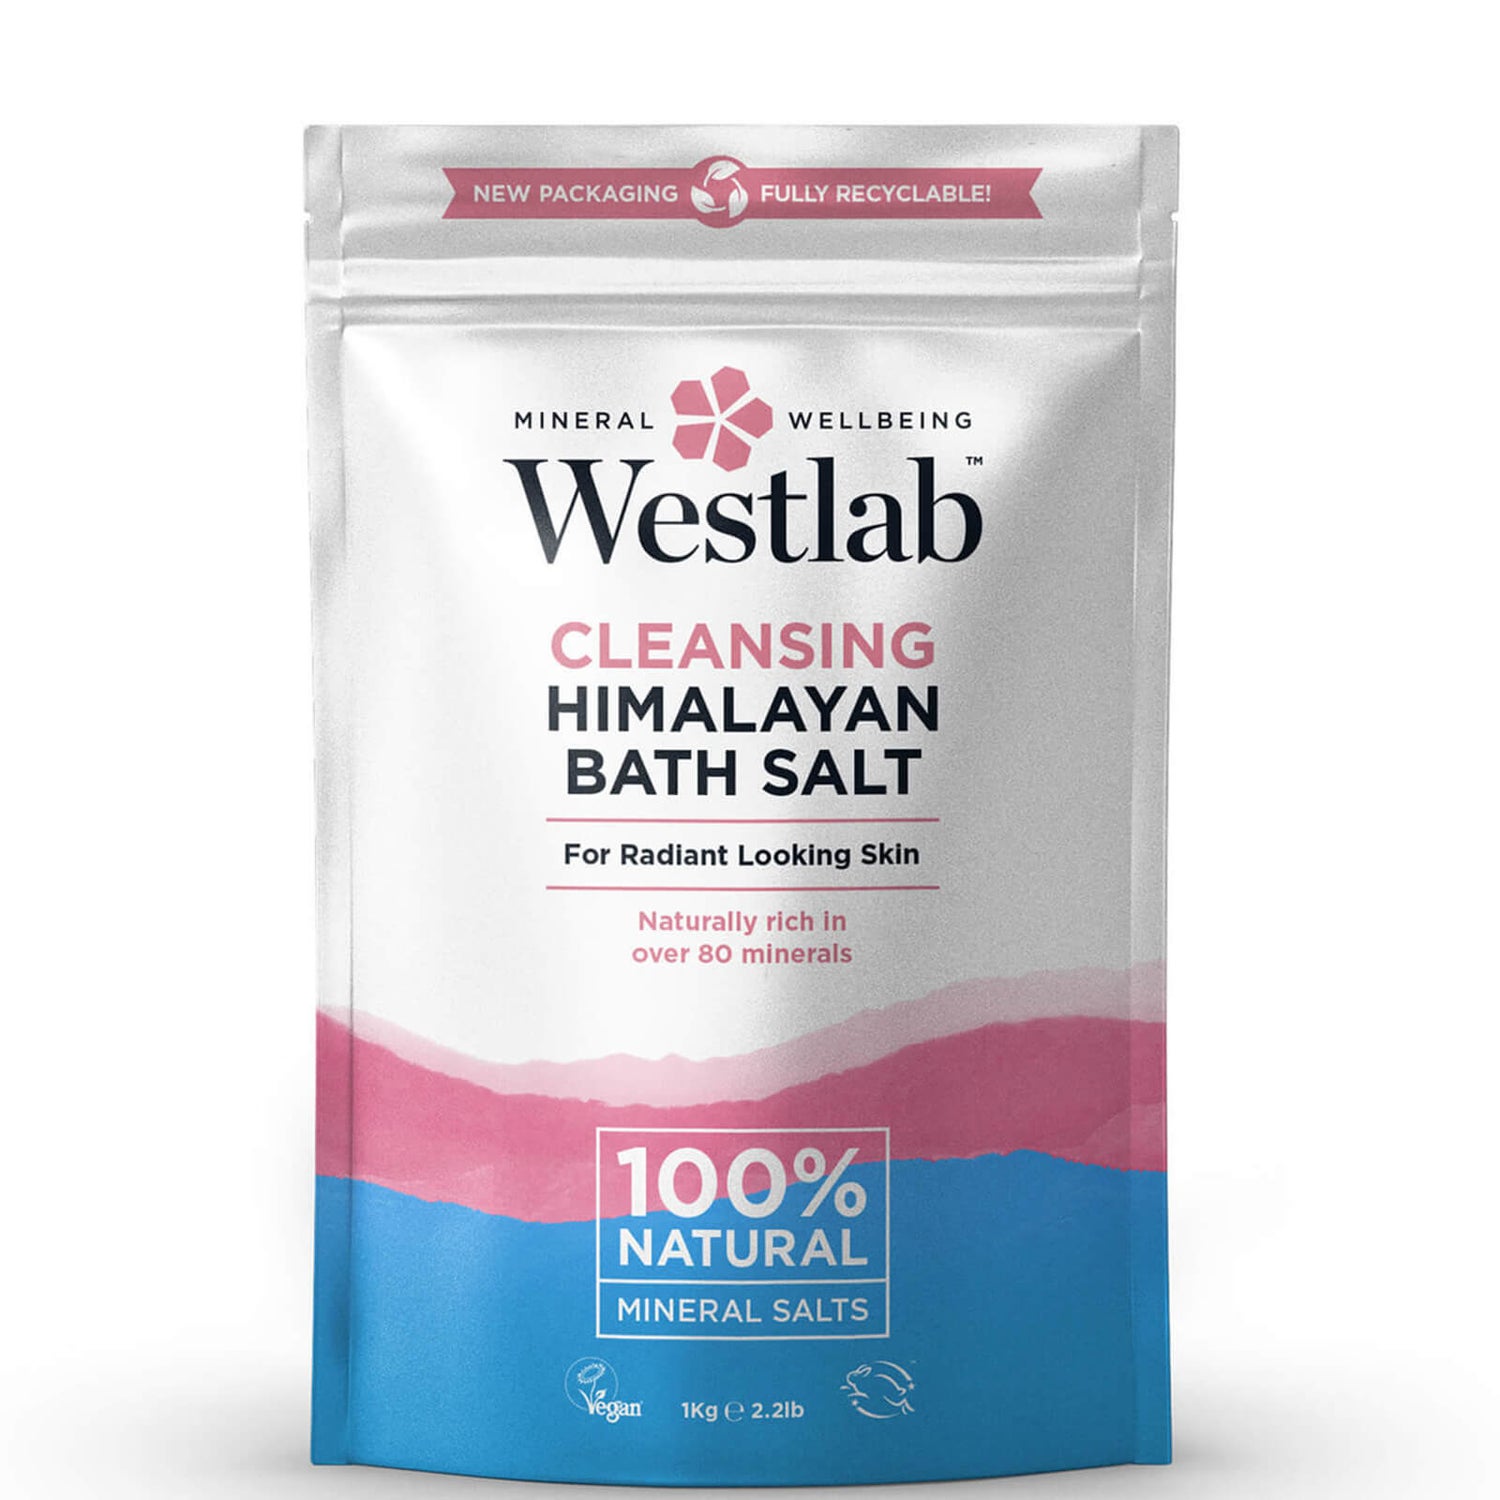 Westlab 喜馬拉雅浴鹽 1kg